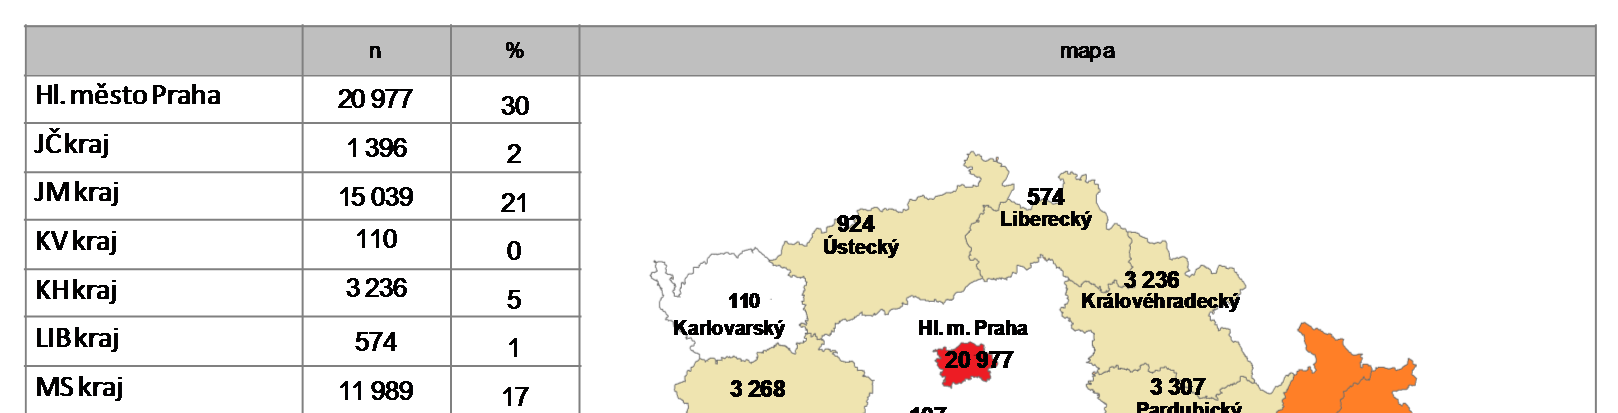 Z hlediska regionálního rozložení byl nejvyšší počet účastníků na konferencích v Praze (30%) a v